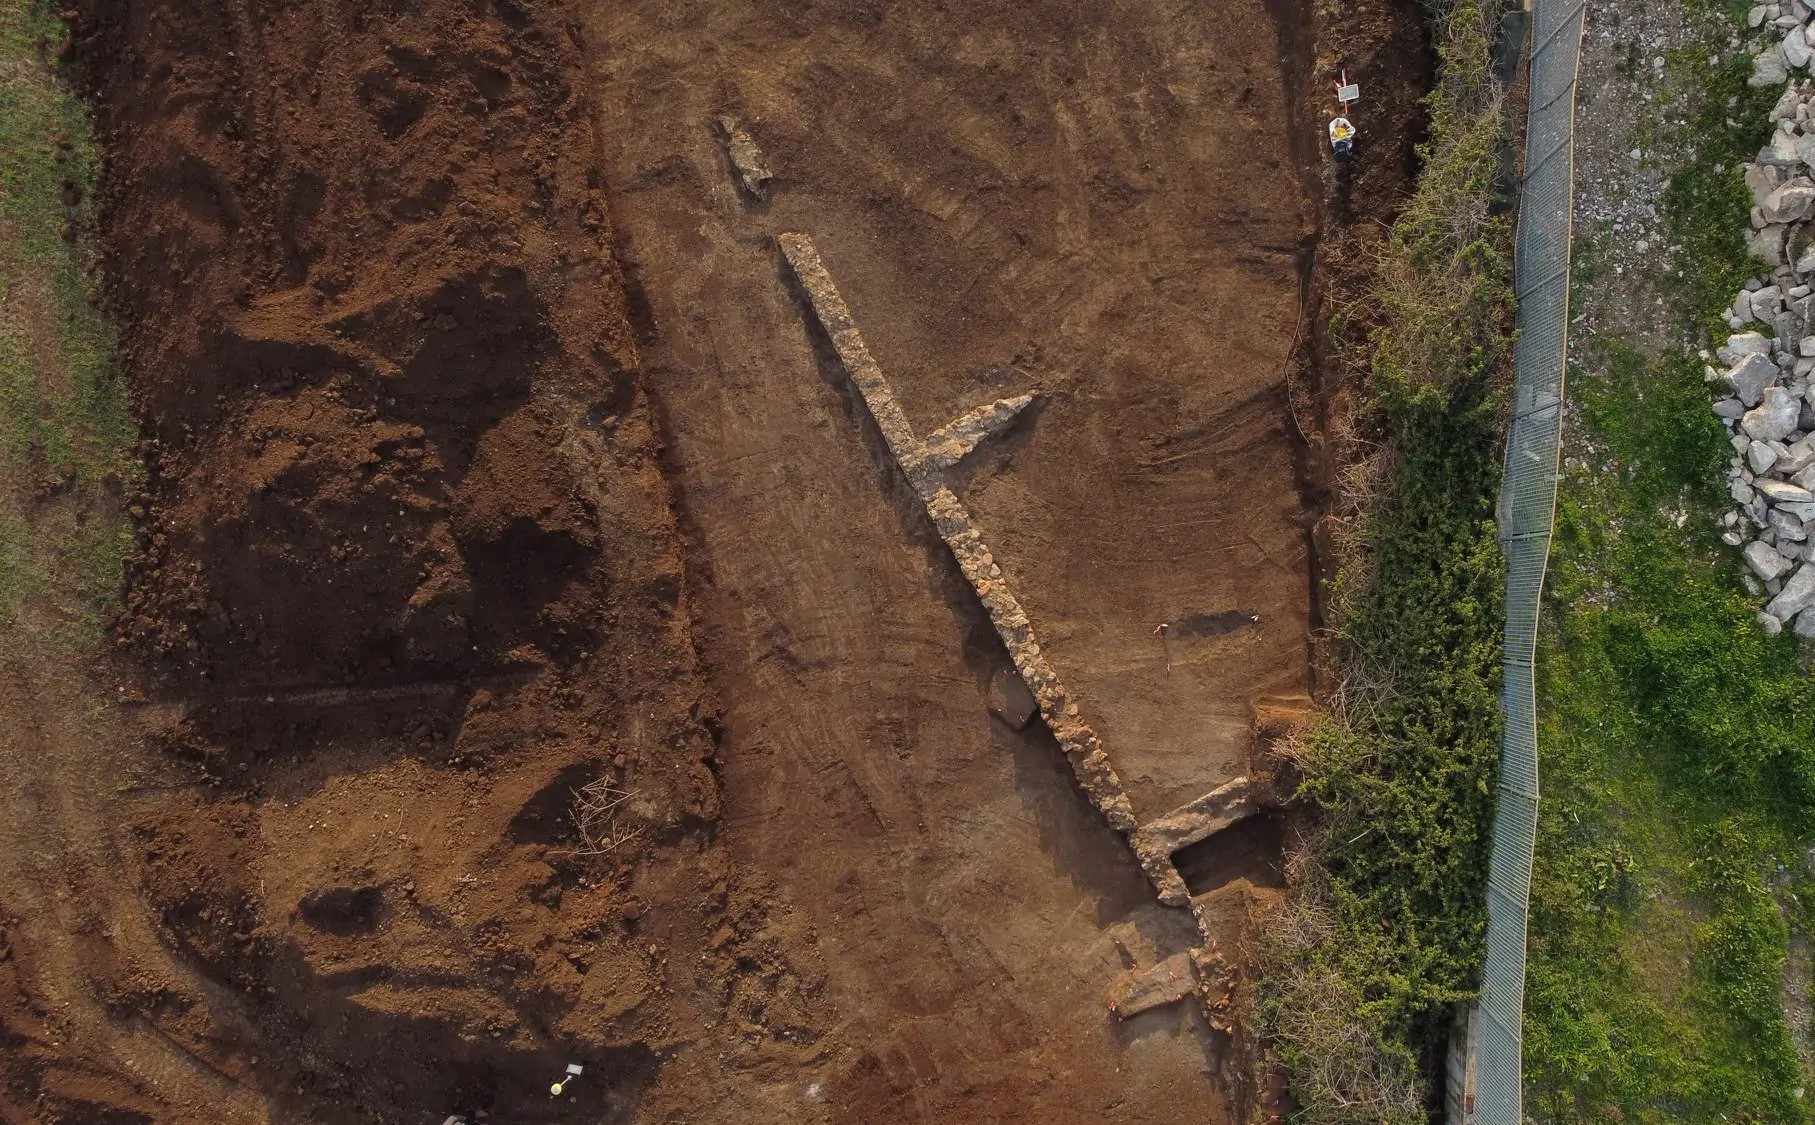 Ritrovamenti ala stazione di Pomezia: durante i lavori, sono stati ritrovati resti archeologici risalenti al II-IV secolo d.C. 